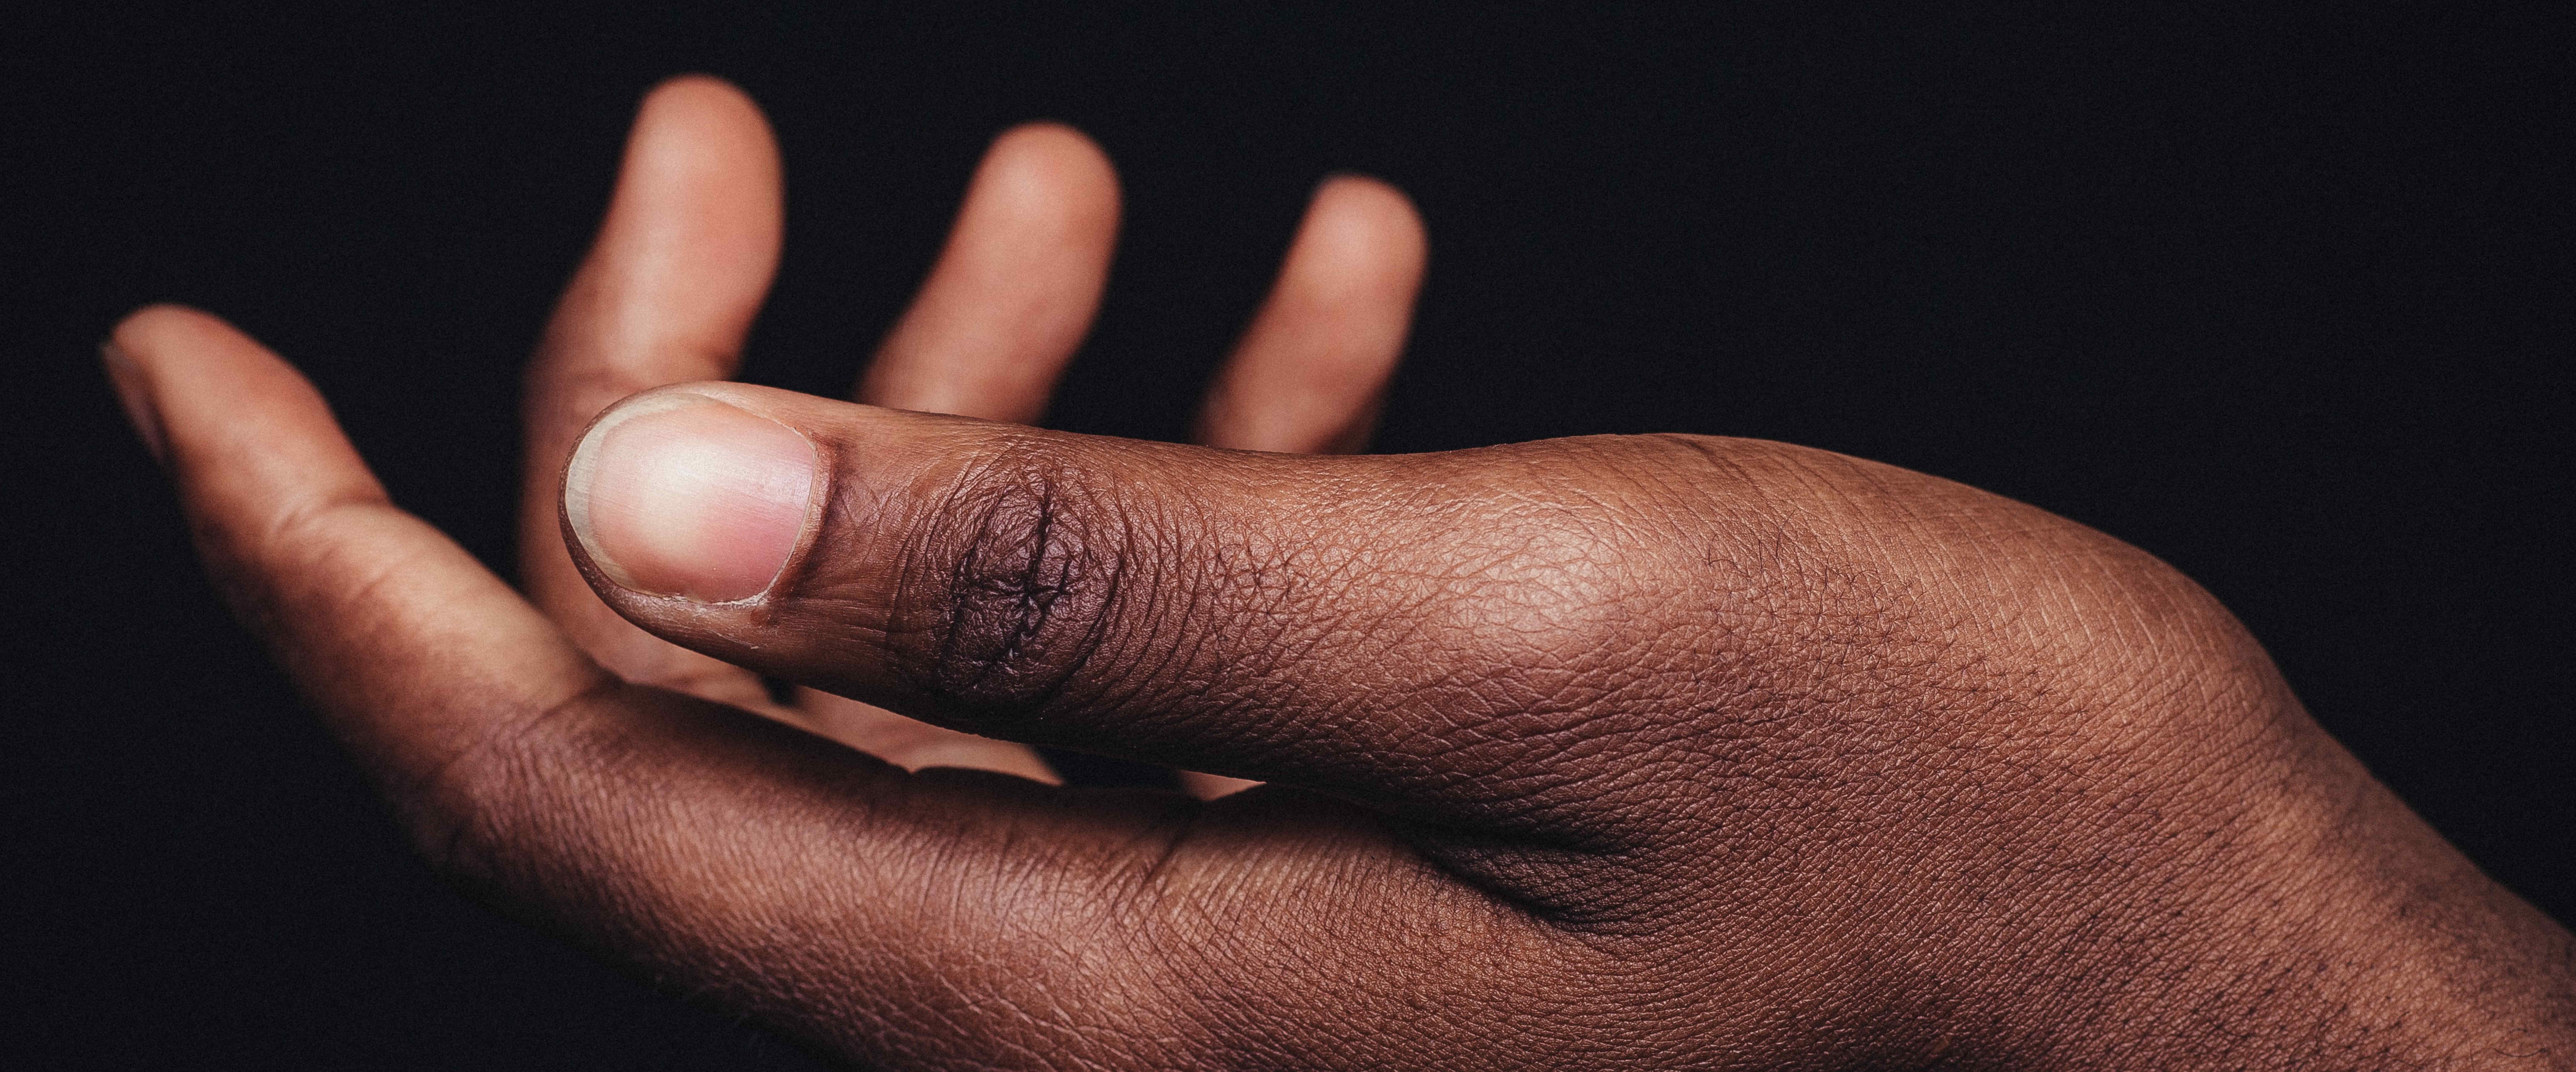 Min Bruna Hand Är Också En Hand – Black Lives Matter Med 1 2Åringar Slide1